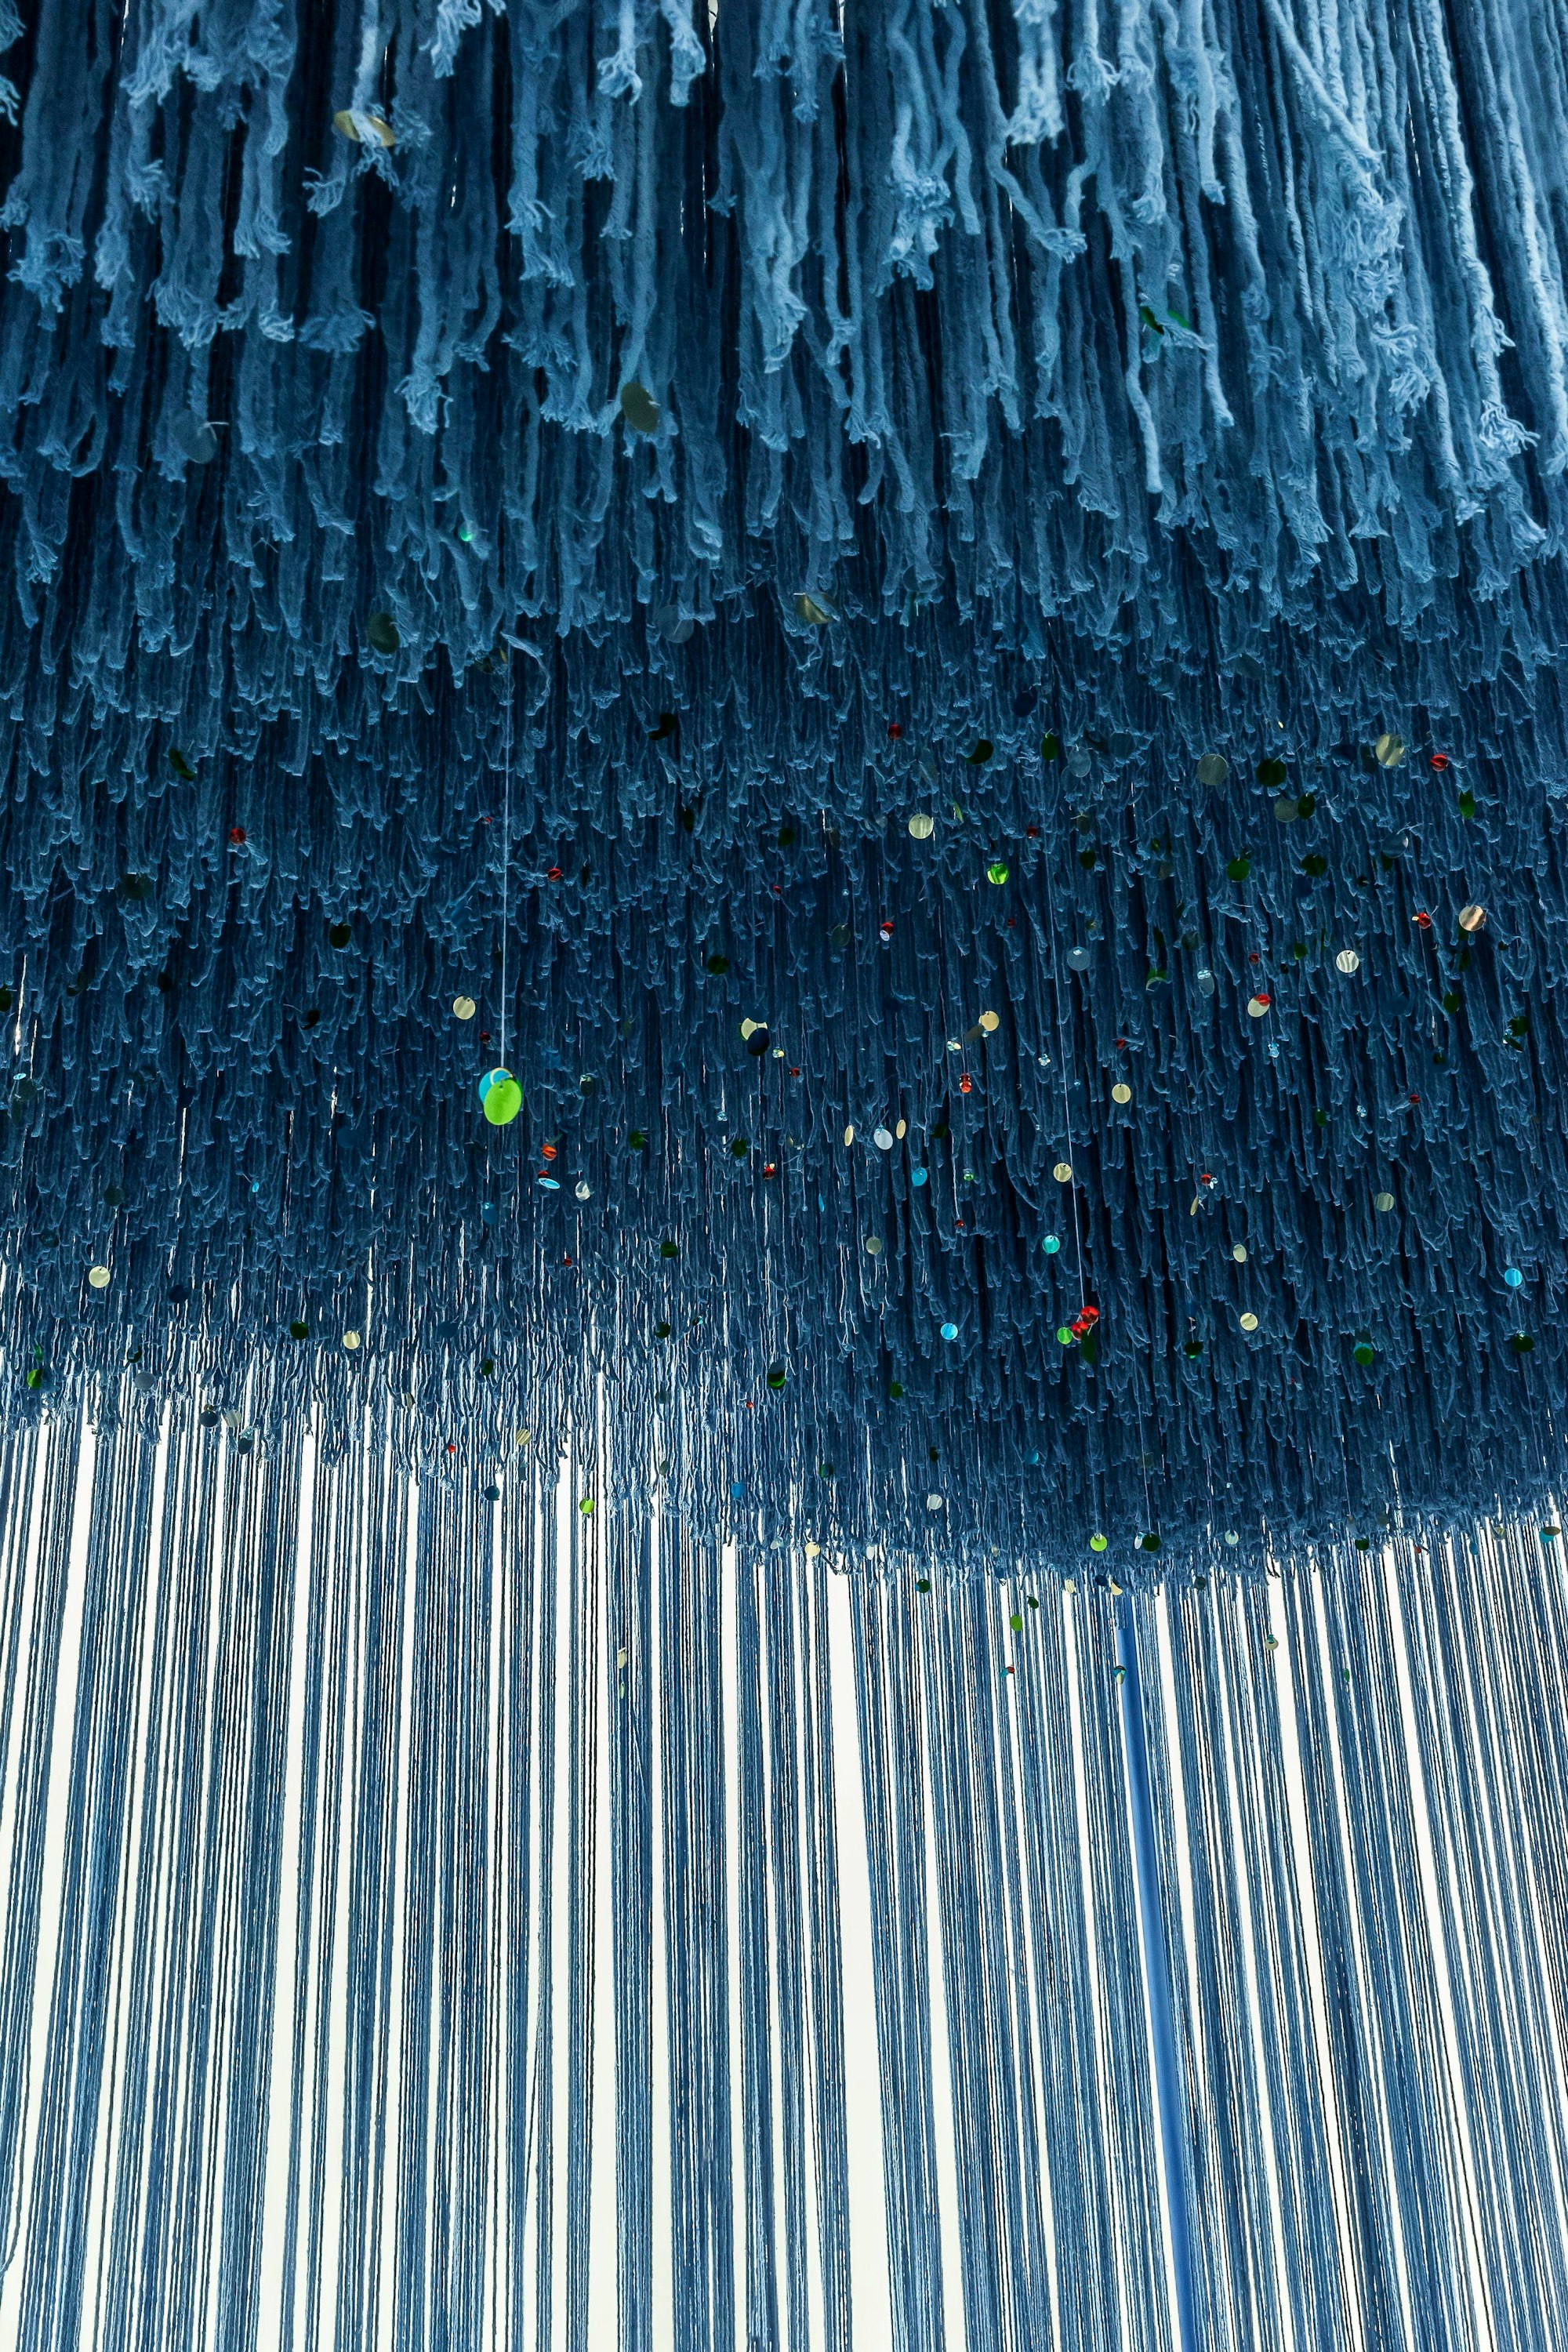 Eine dreidimensionale Malerei der türkischen Künstlerin Füsun Onur. Sie besteht aus langen blauen Wollfäden, die von der Decke hängen.